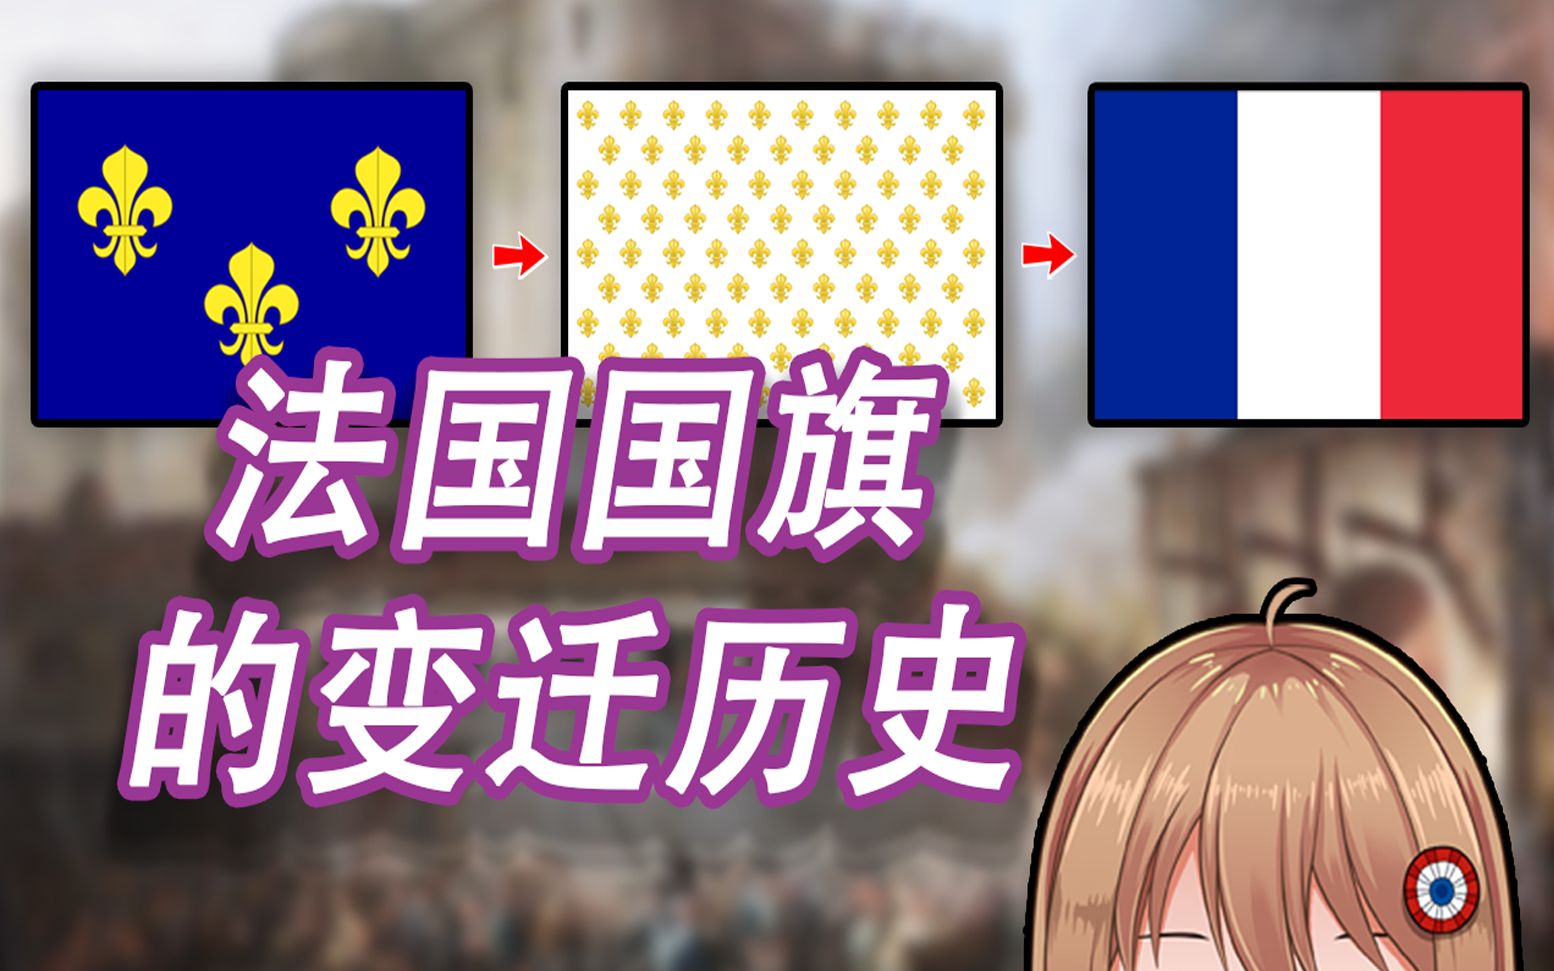 法国国旗的变迁历史从鸢尾花到三色旗